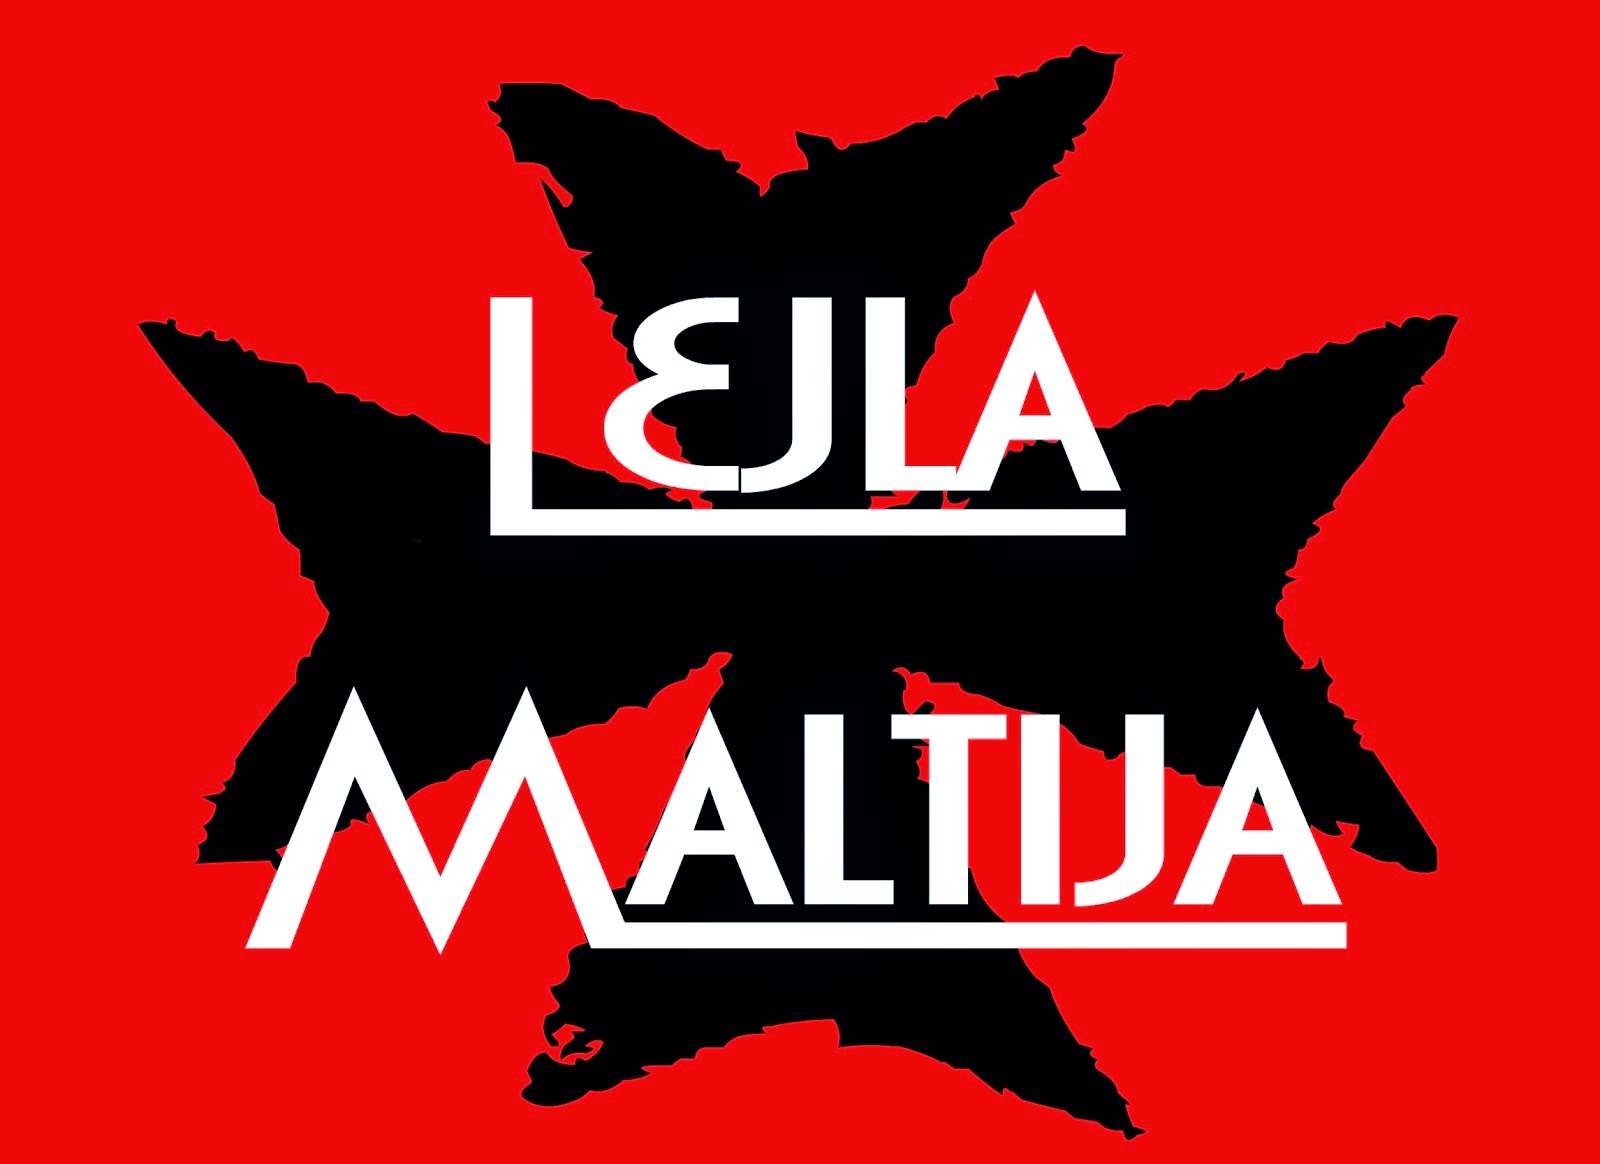 Lejla Maltija